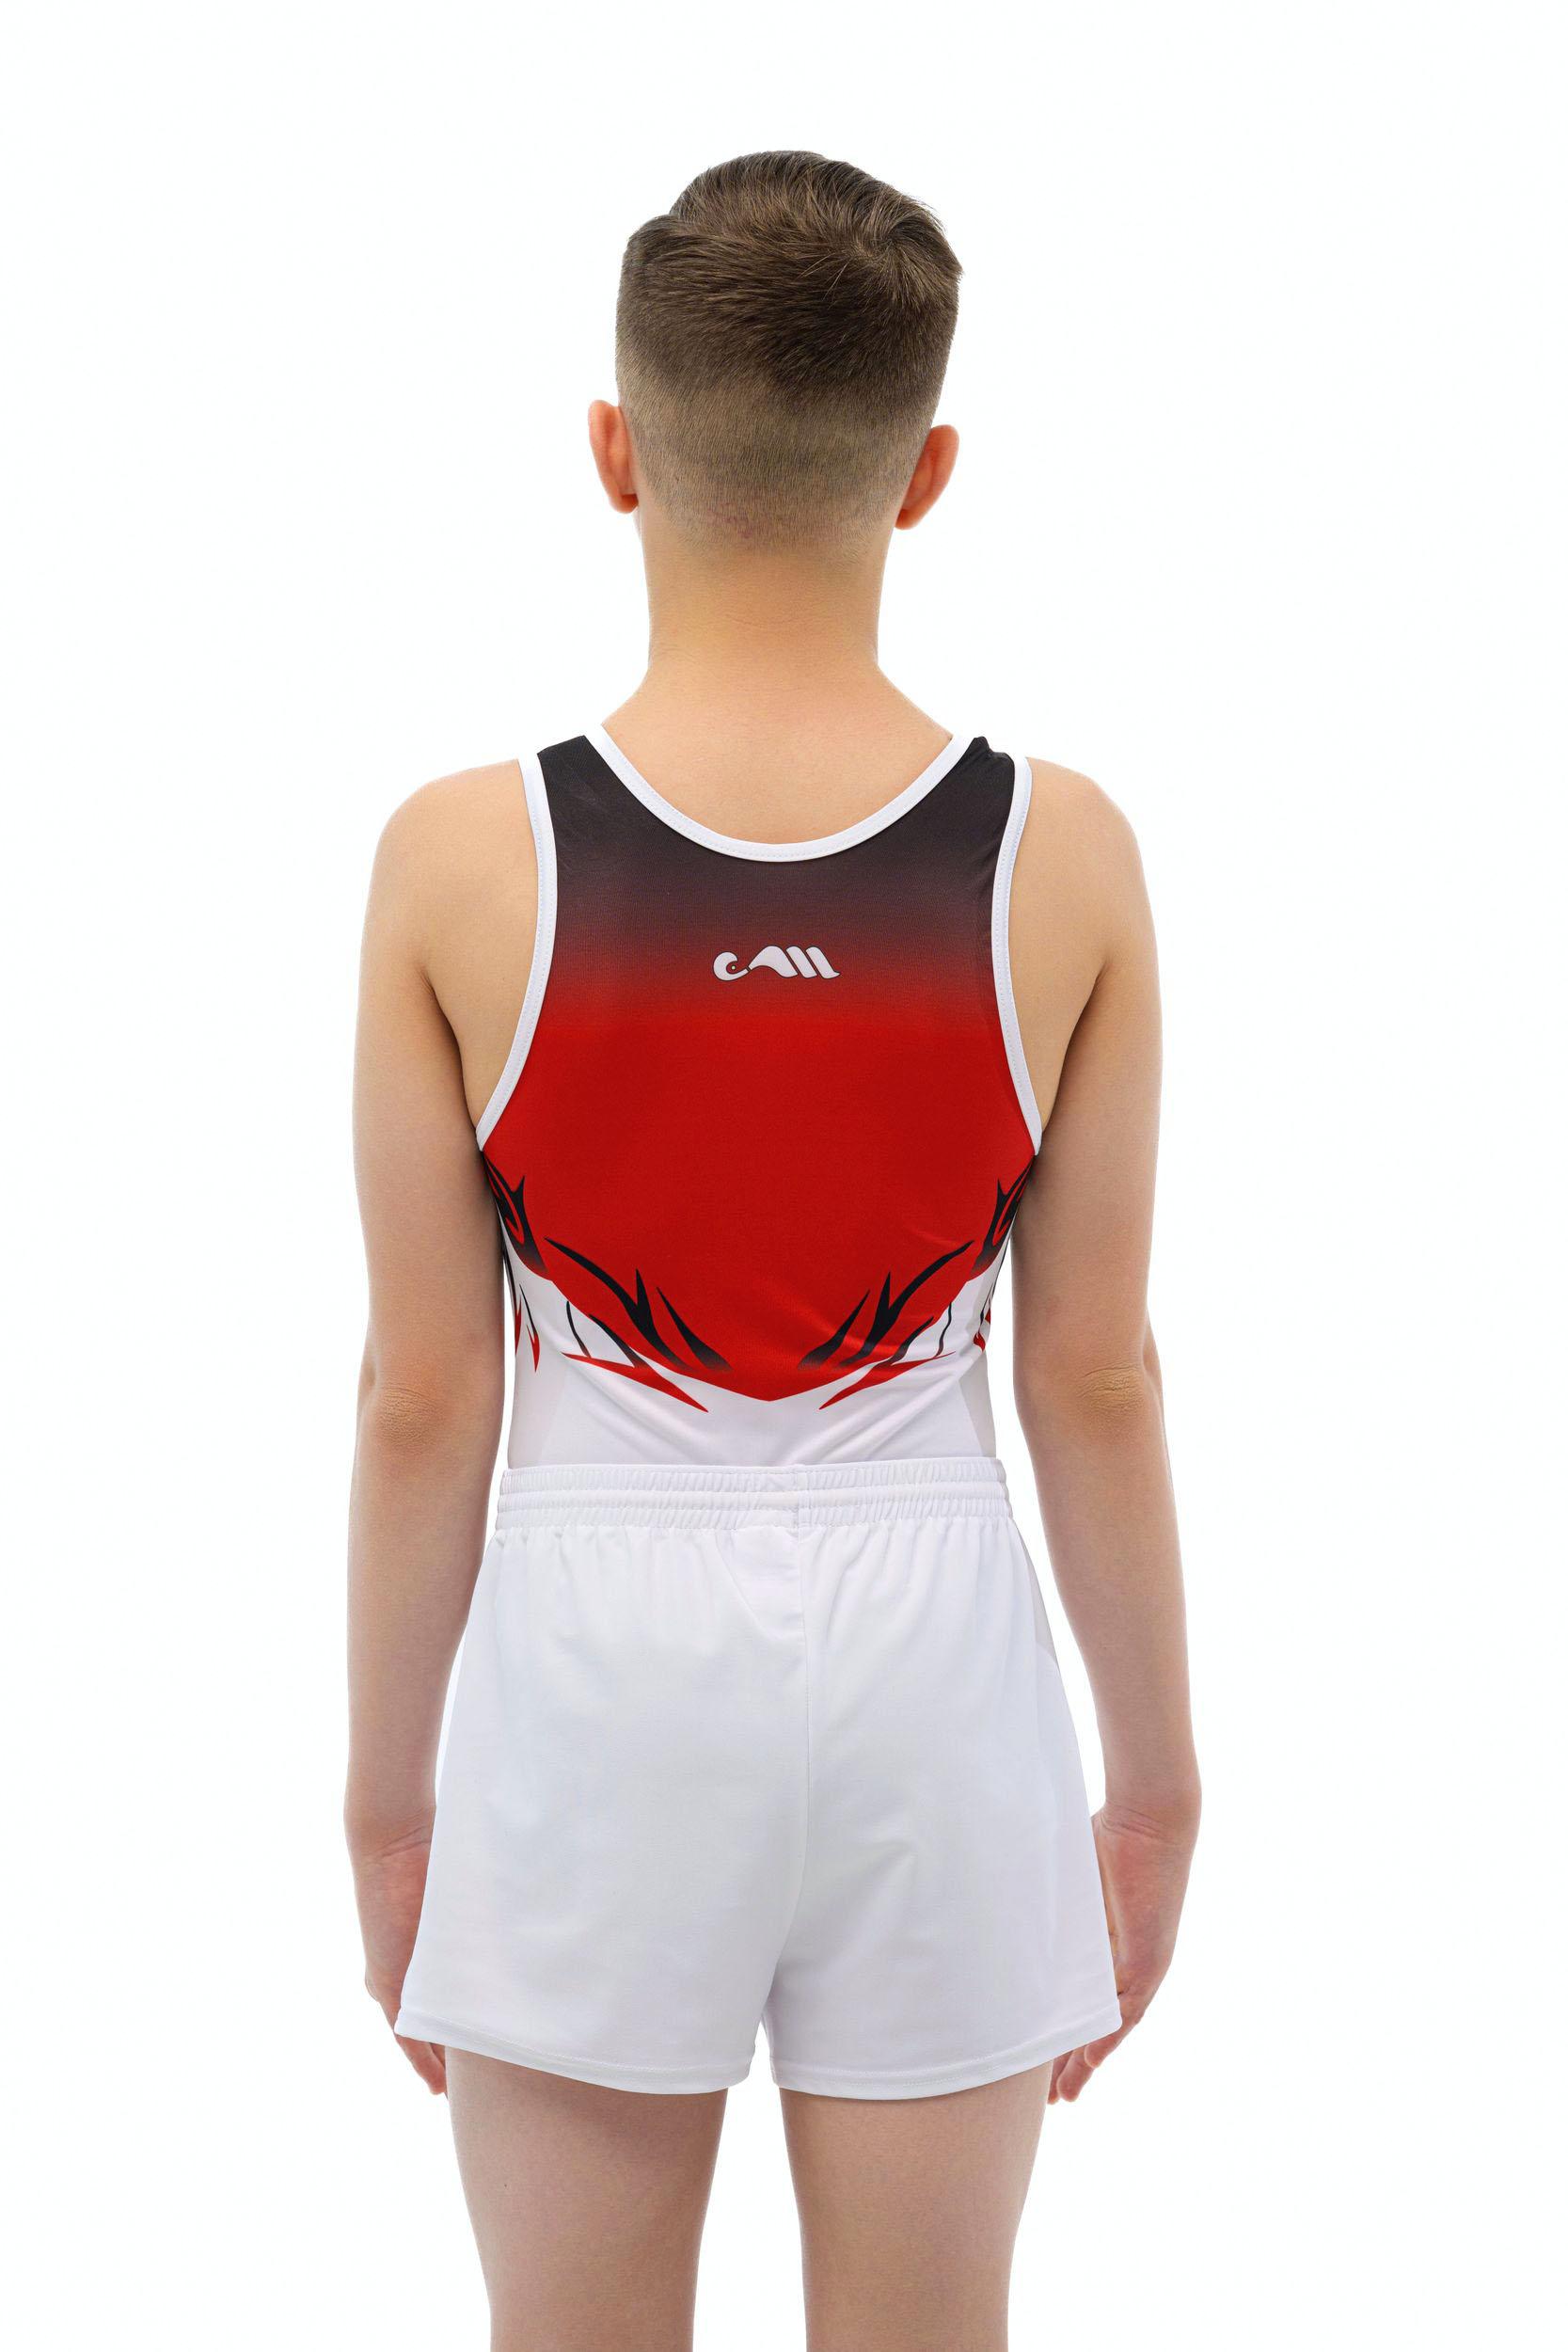 Купальник мужской для спортивной гимнастики Christian Moreau 4959 красно-черный с белым рисунком без рукава